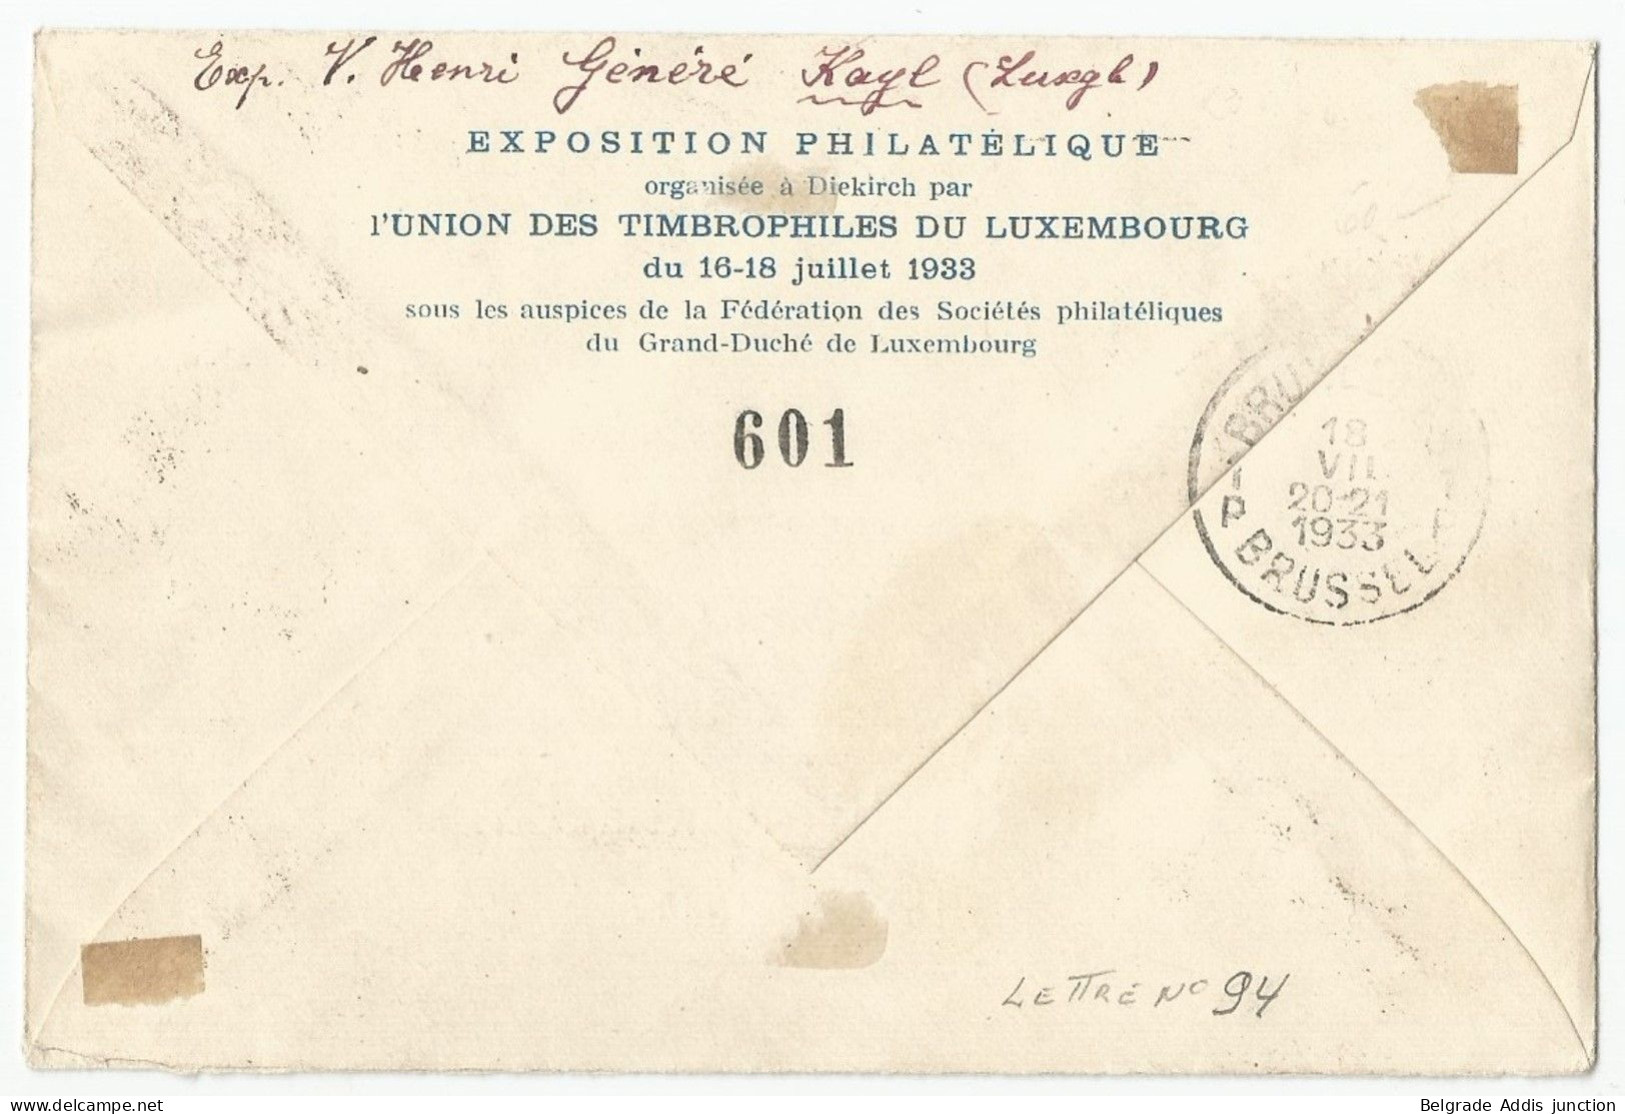 Luxembourg Luxemburg Belgique Belgium Airmail Cover 1933 Sabena - Storia Postale